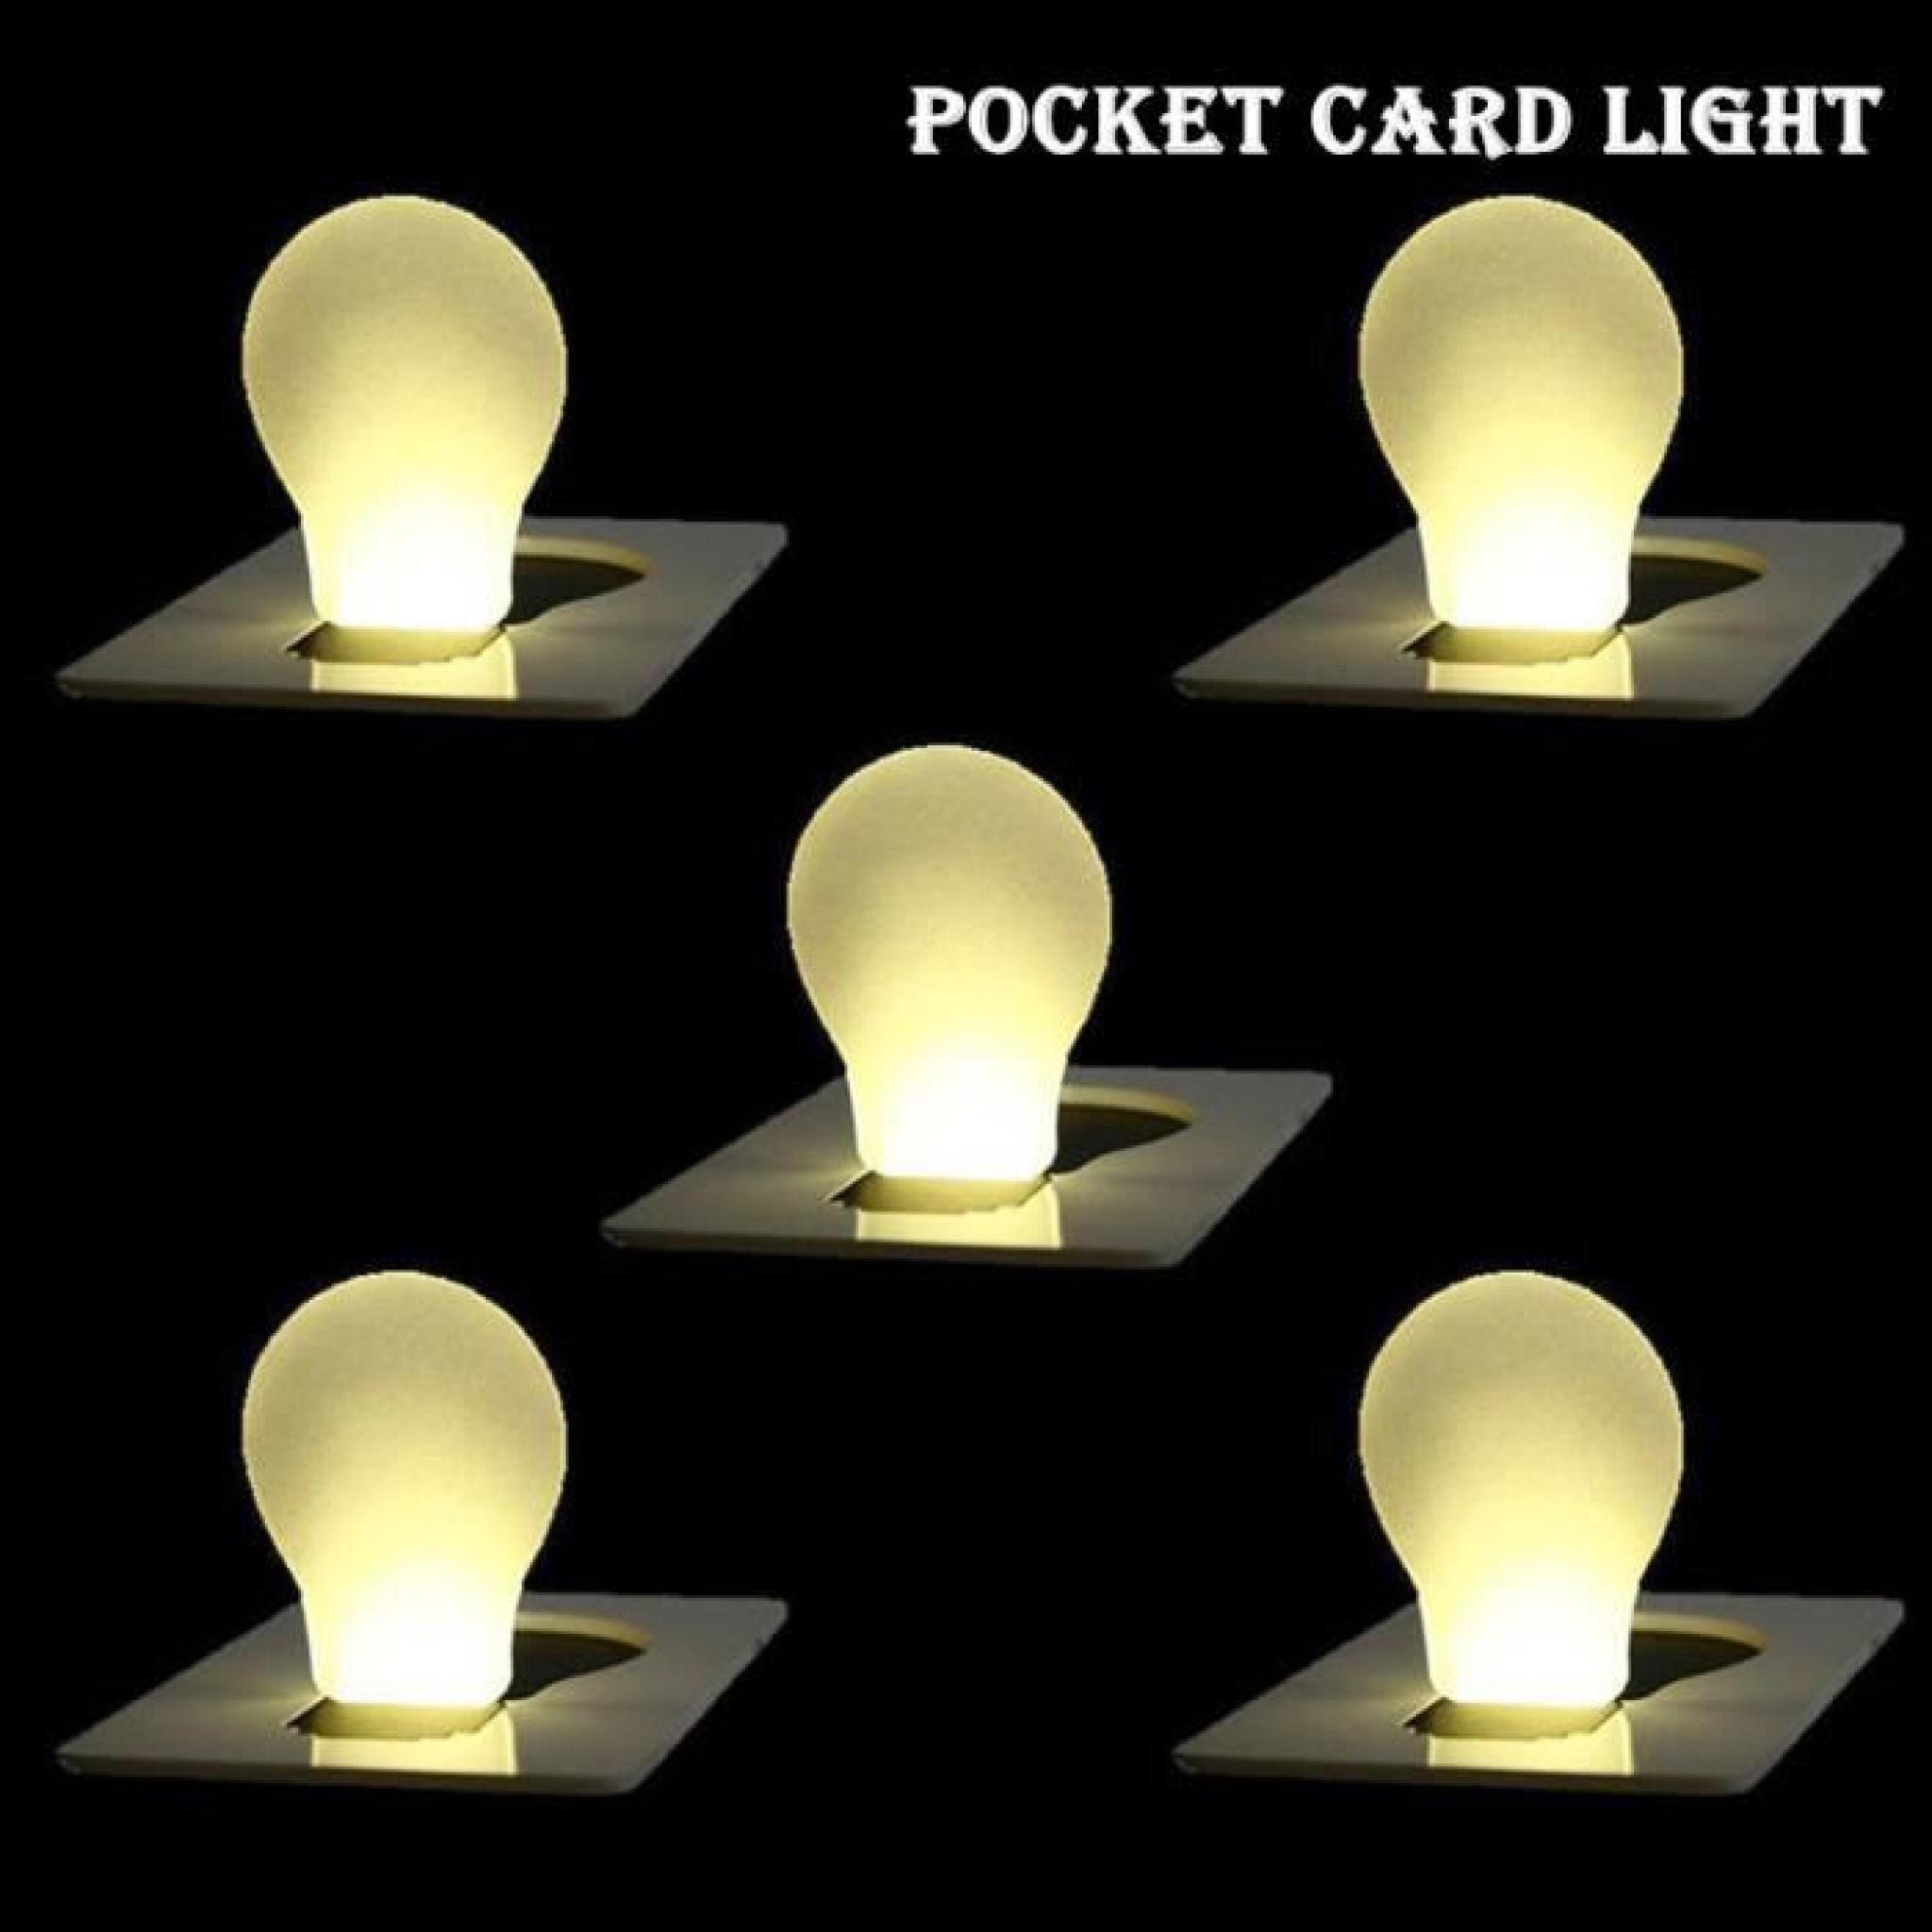 portable carte de LED lampe de poche lumière éclairage de secours bourse de portefeuille